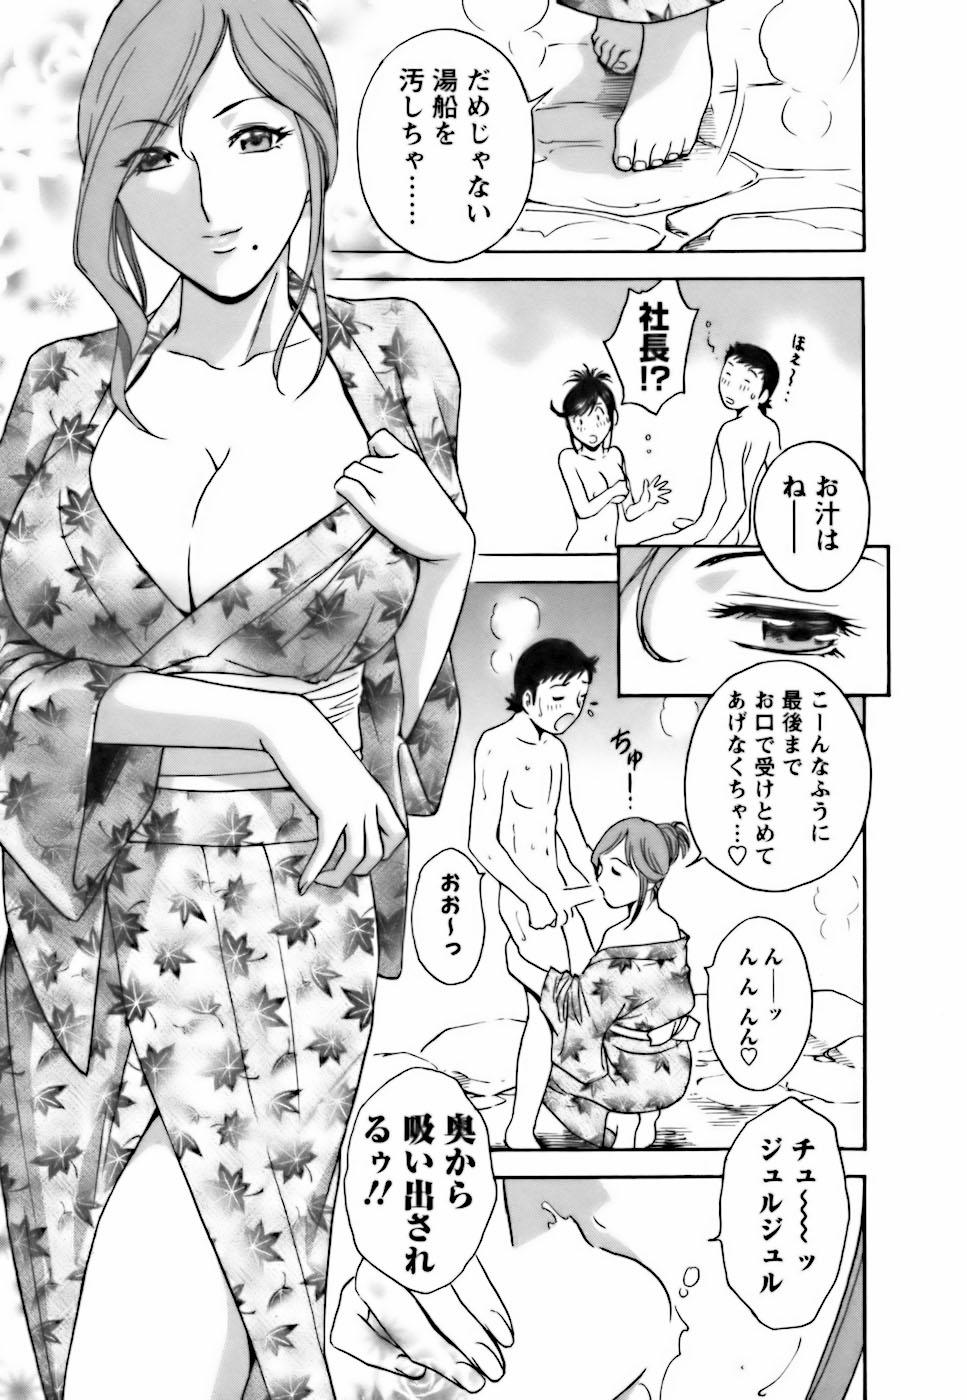 [Hidemaru] Mo-Retsu! Boin Sensei (Boing Boing Teacher) Vol.3 140